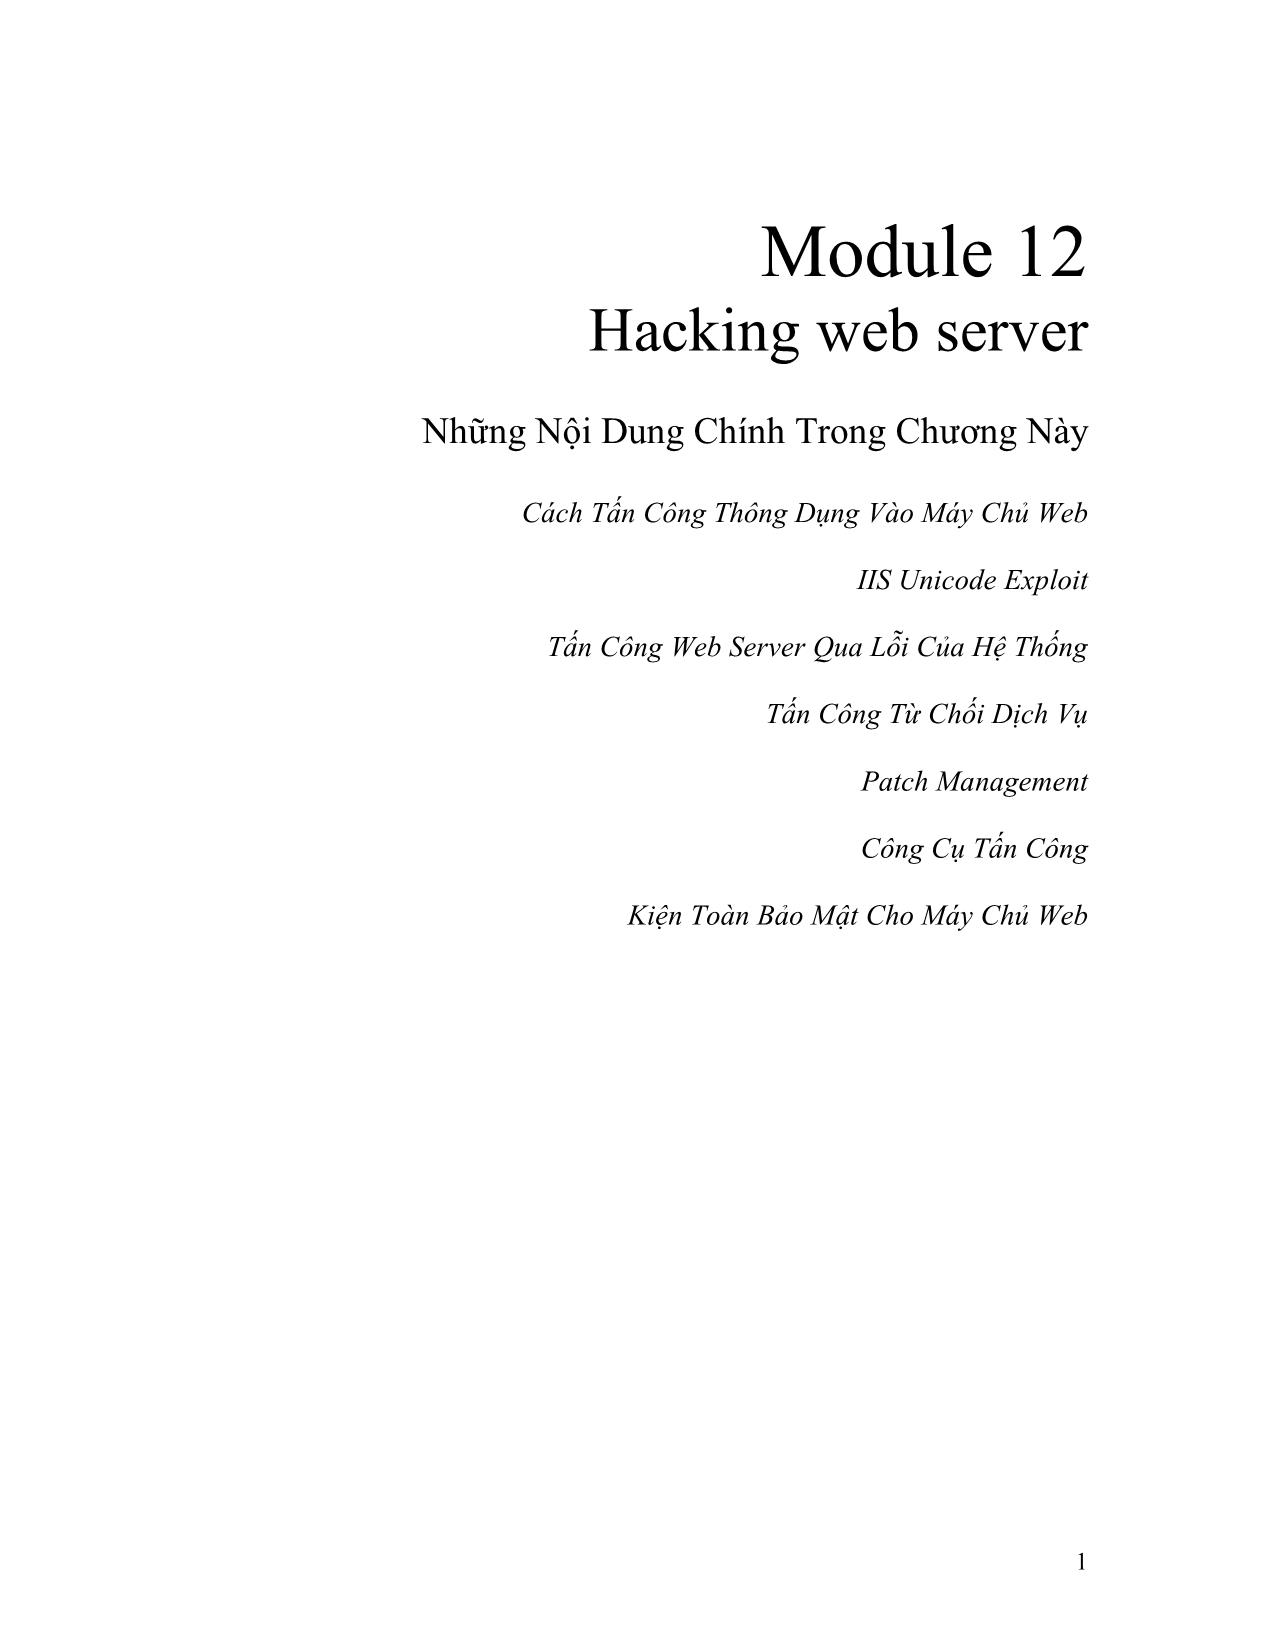 Module 12: Hacking web server trang 1